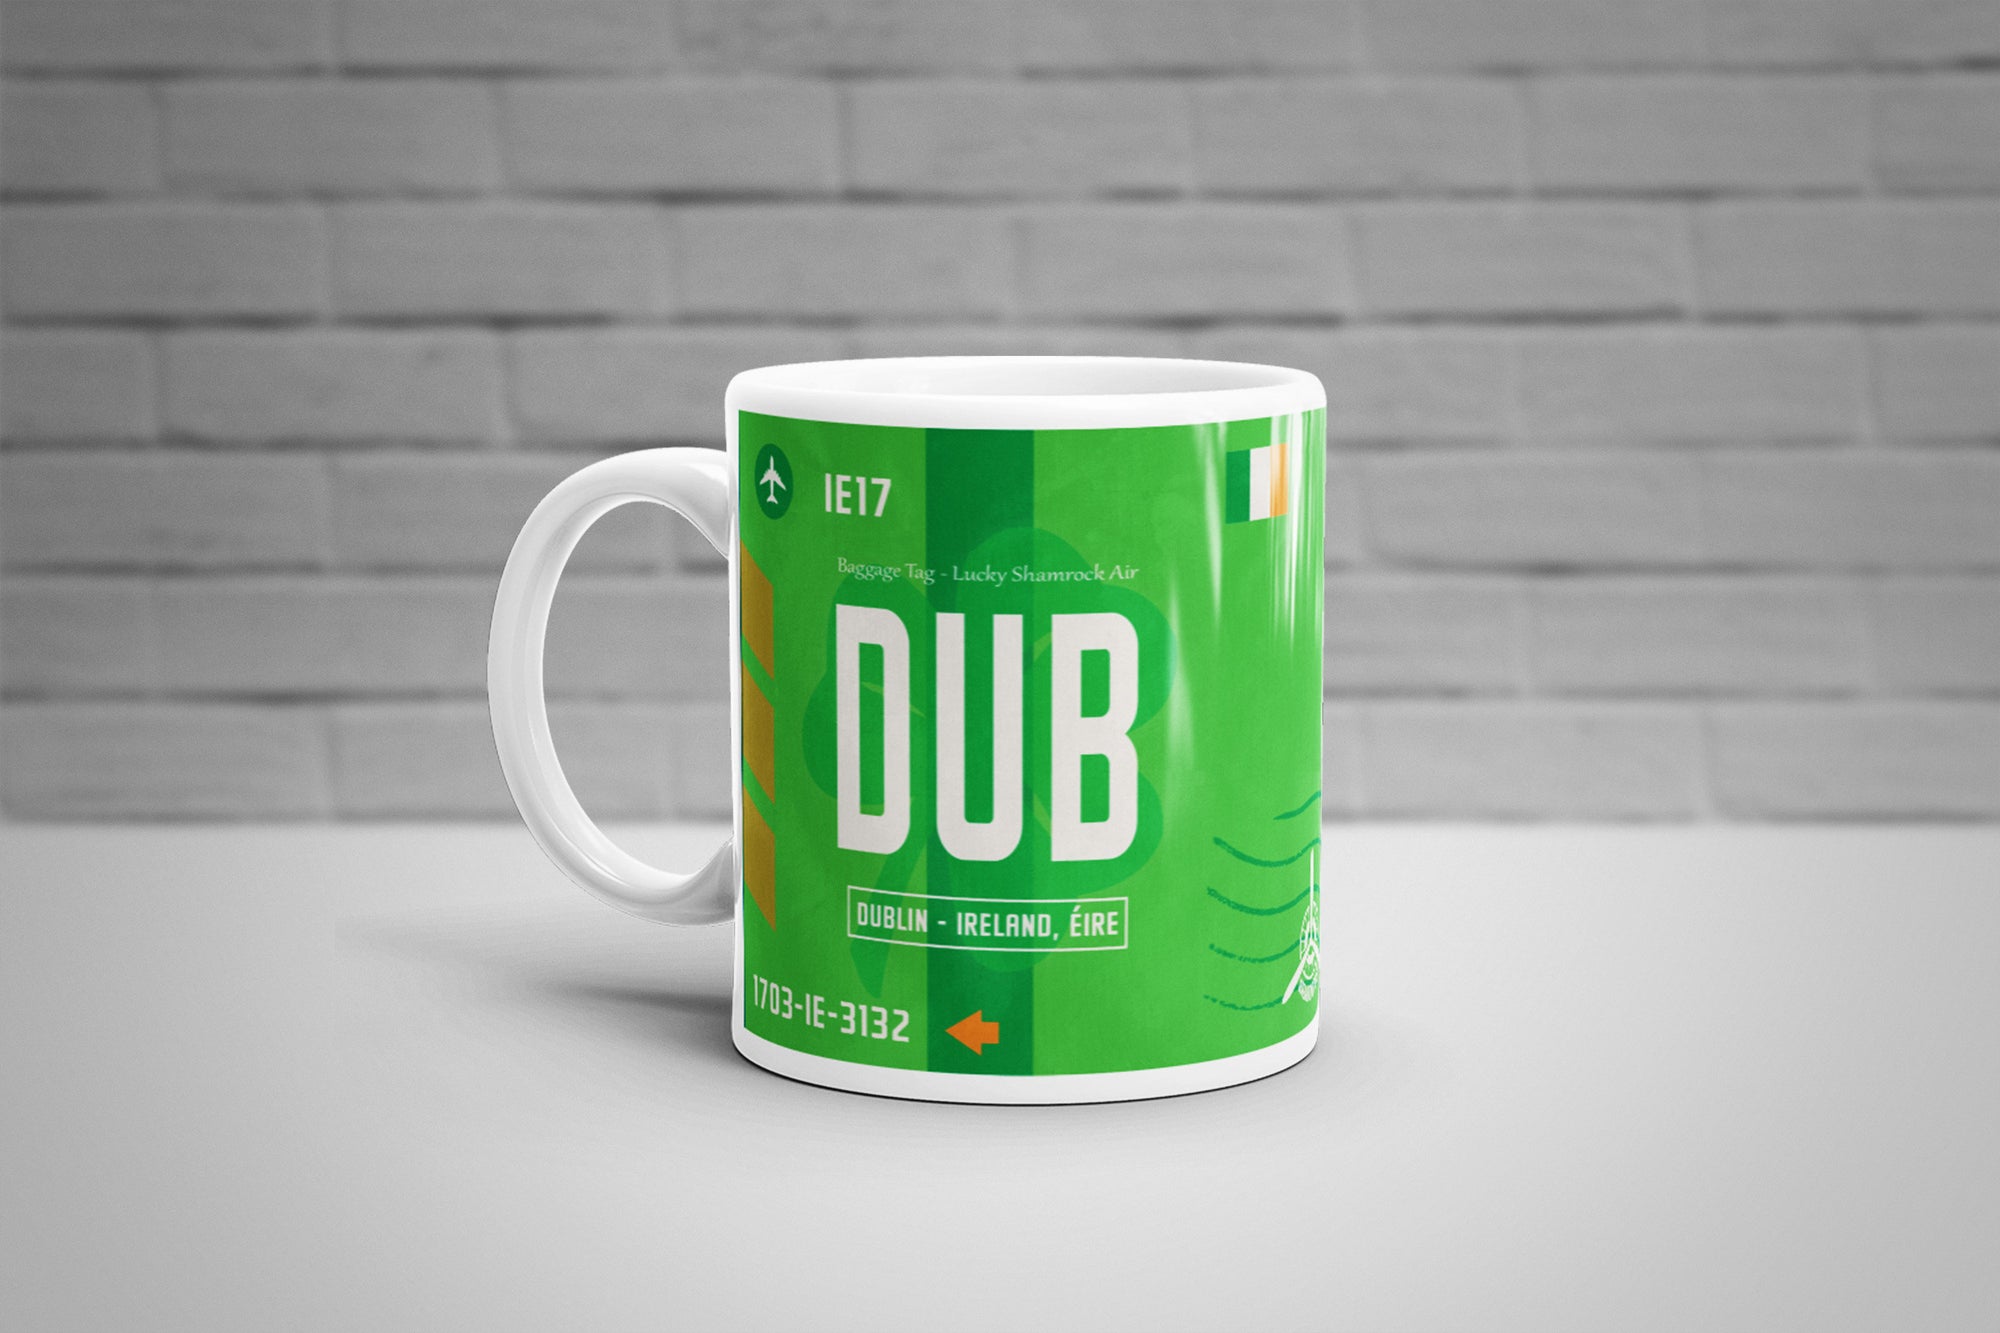 Dublin, Ireland - DUB Airport Code Mug